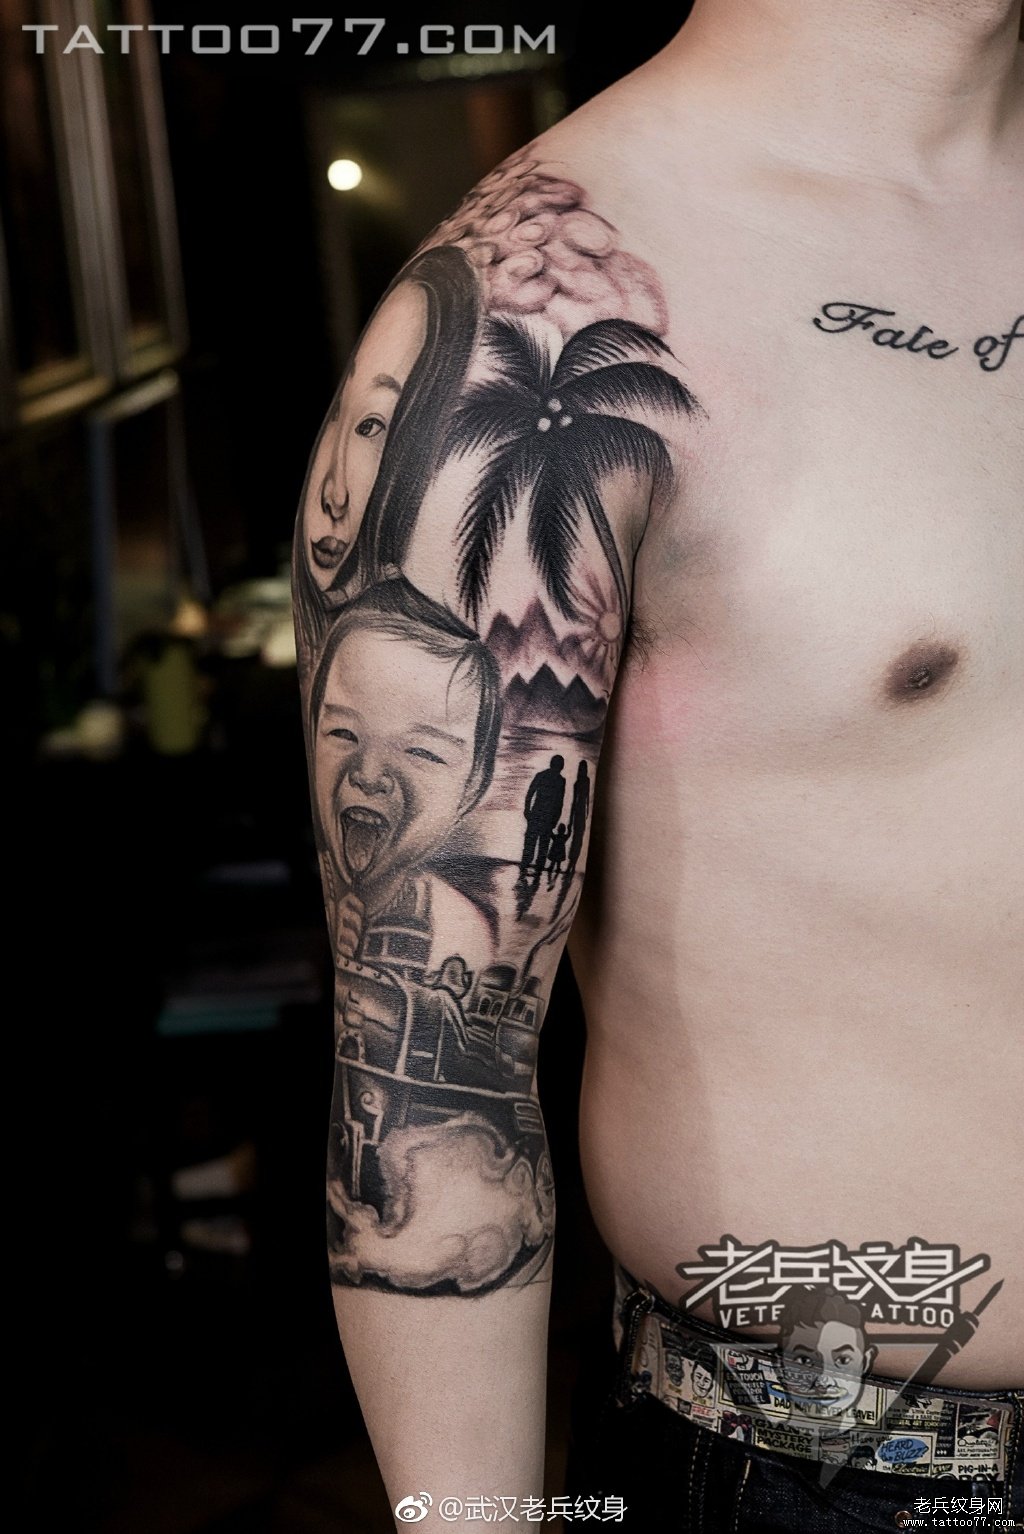 武汉纹身师打造的七分袖花臂肖像纹身图案作品